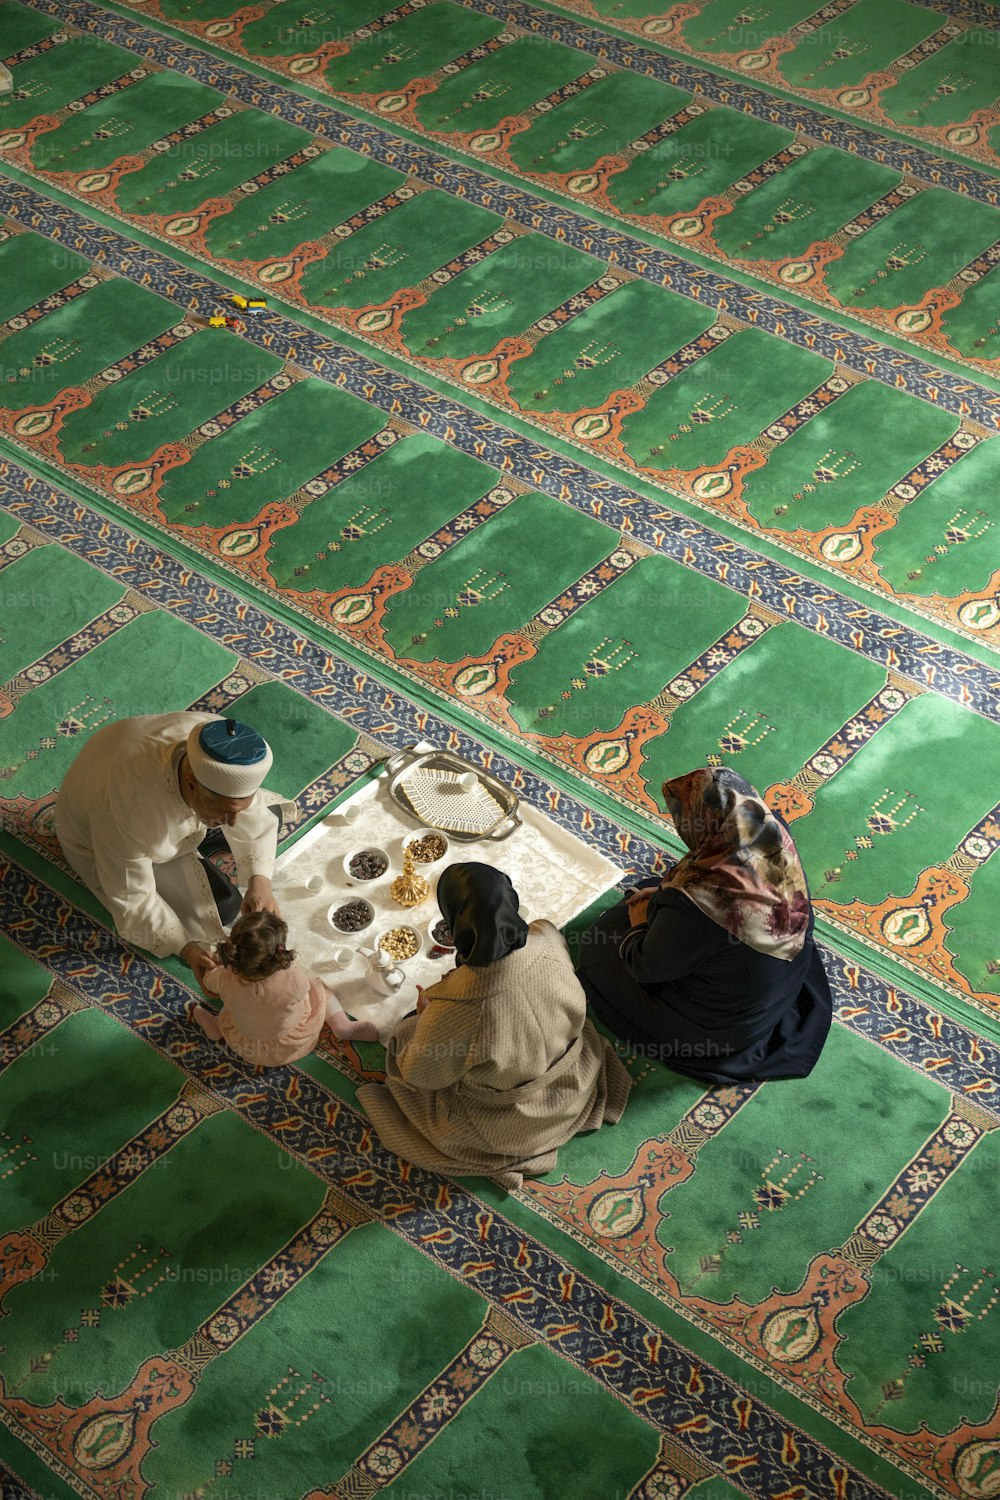 Eine Gruppe von Menschen sitzt auf einem grünen Teppich